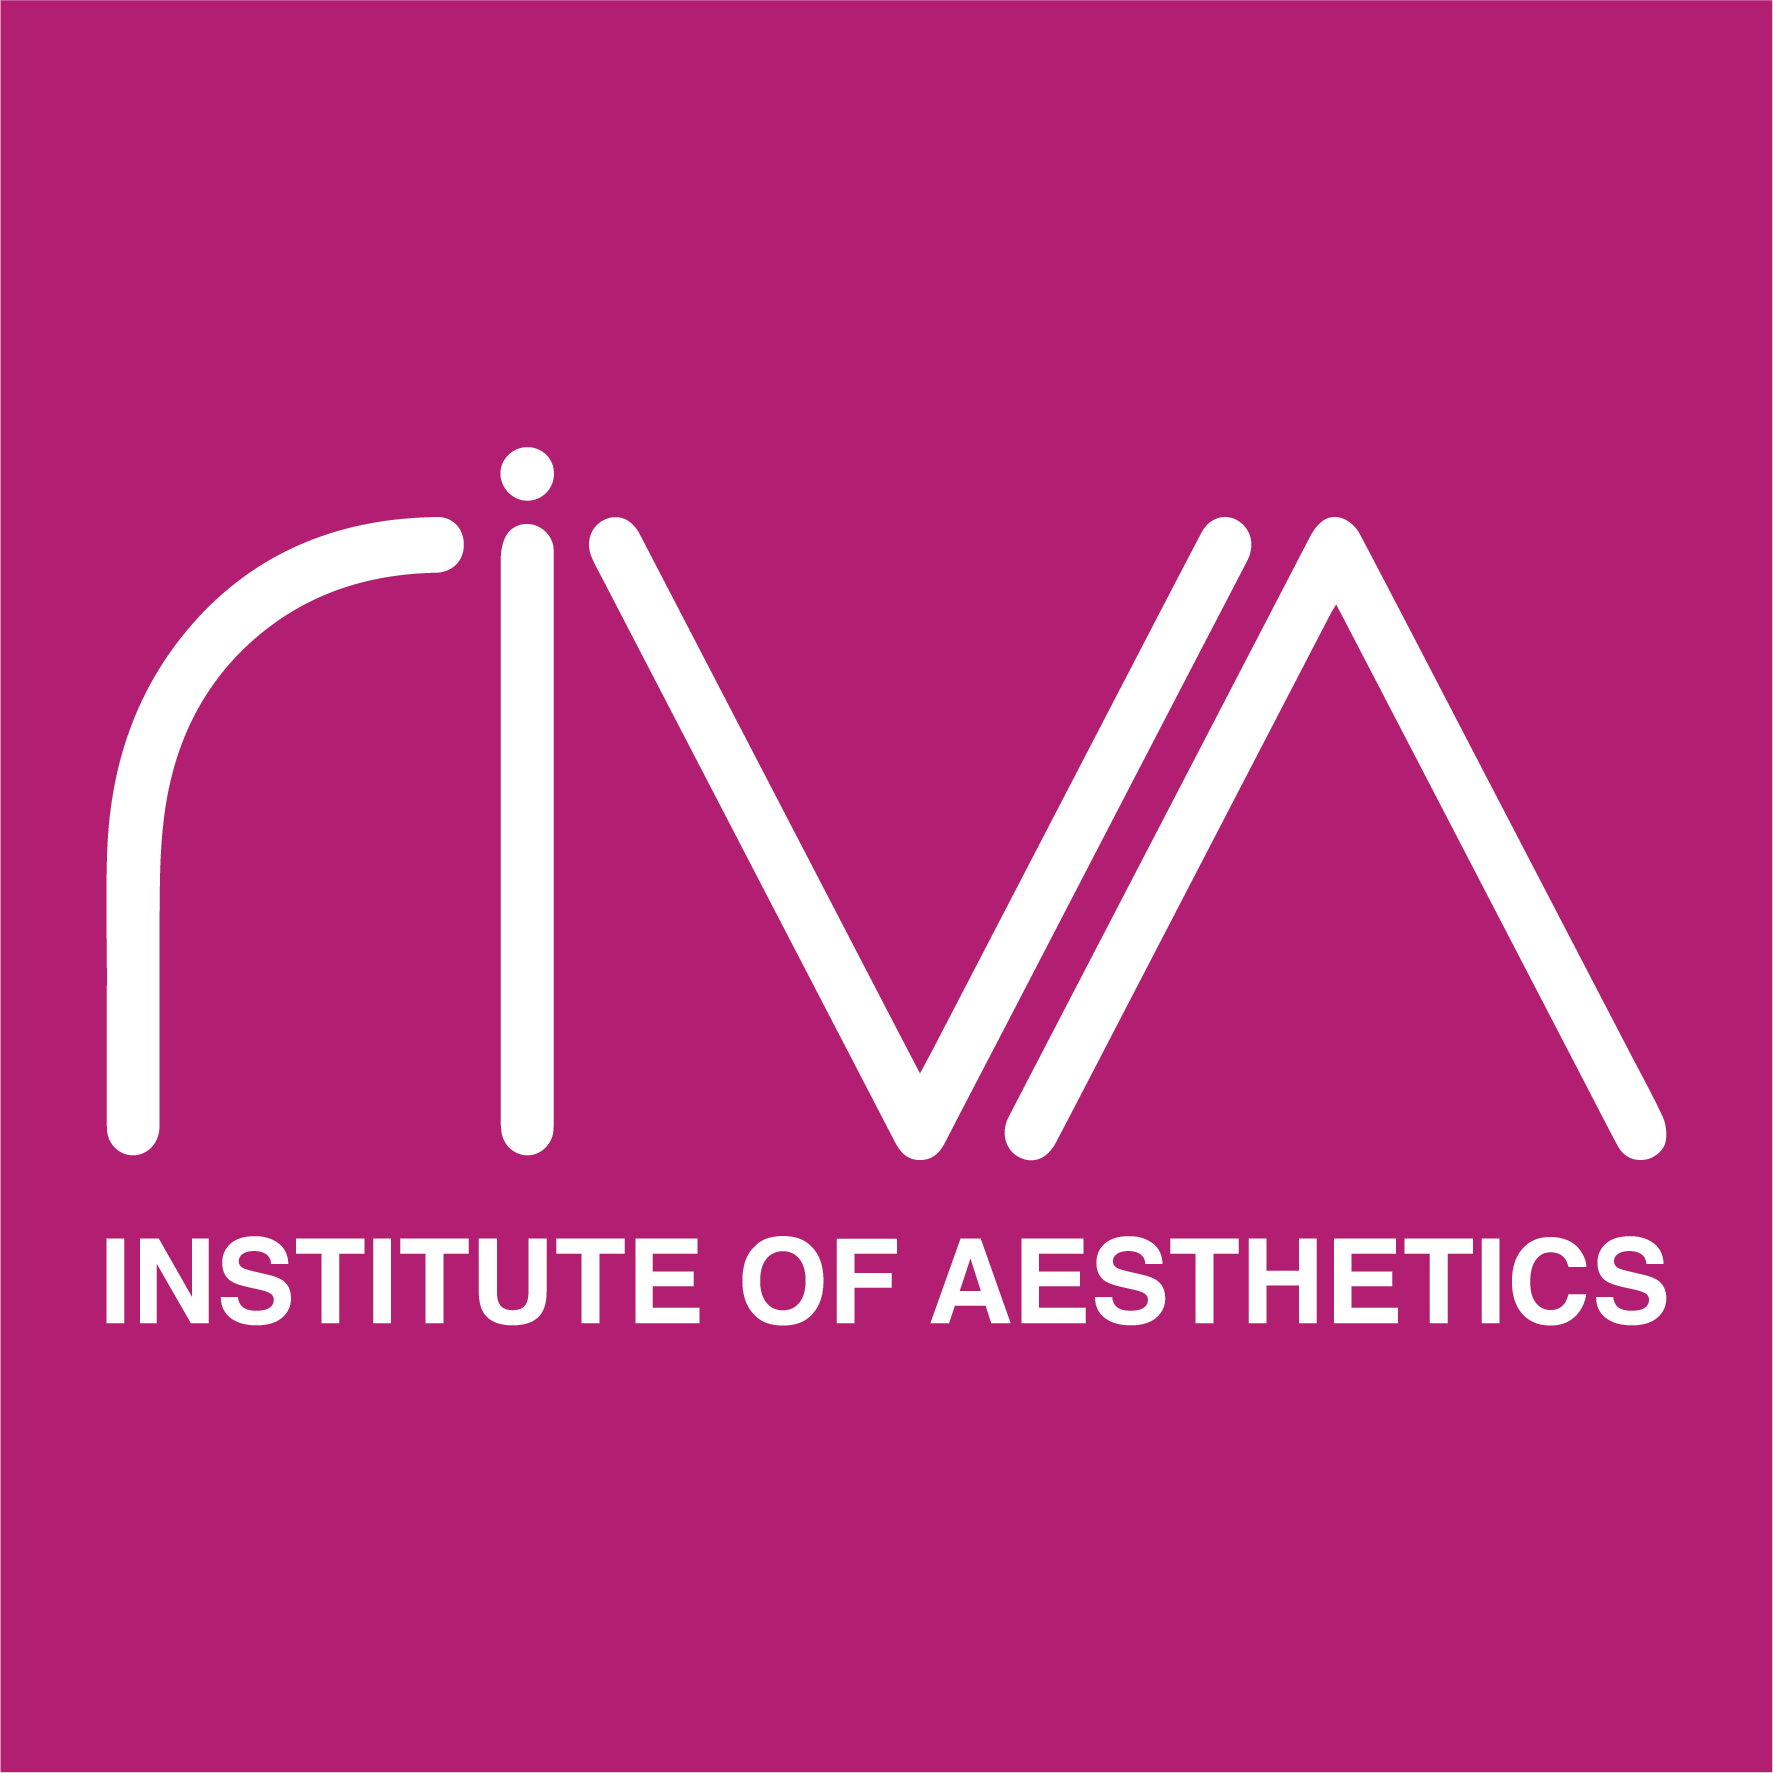 Riva Institute of Aesthetics Logo